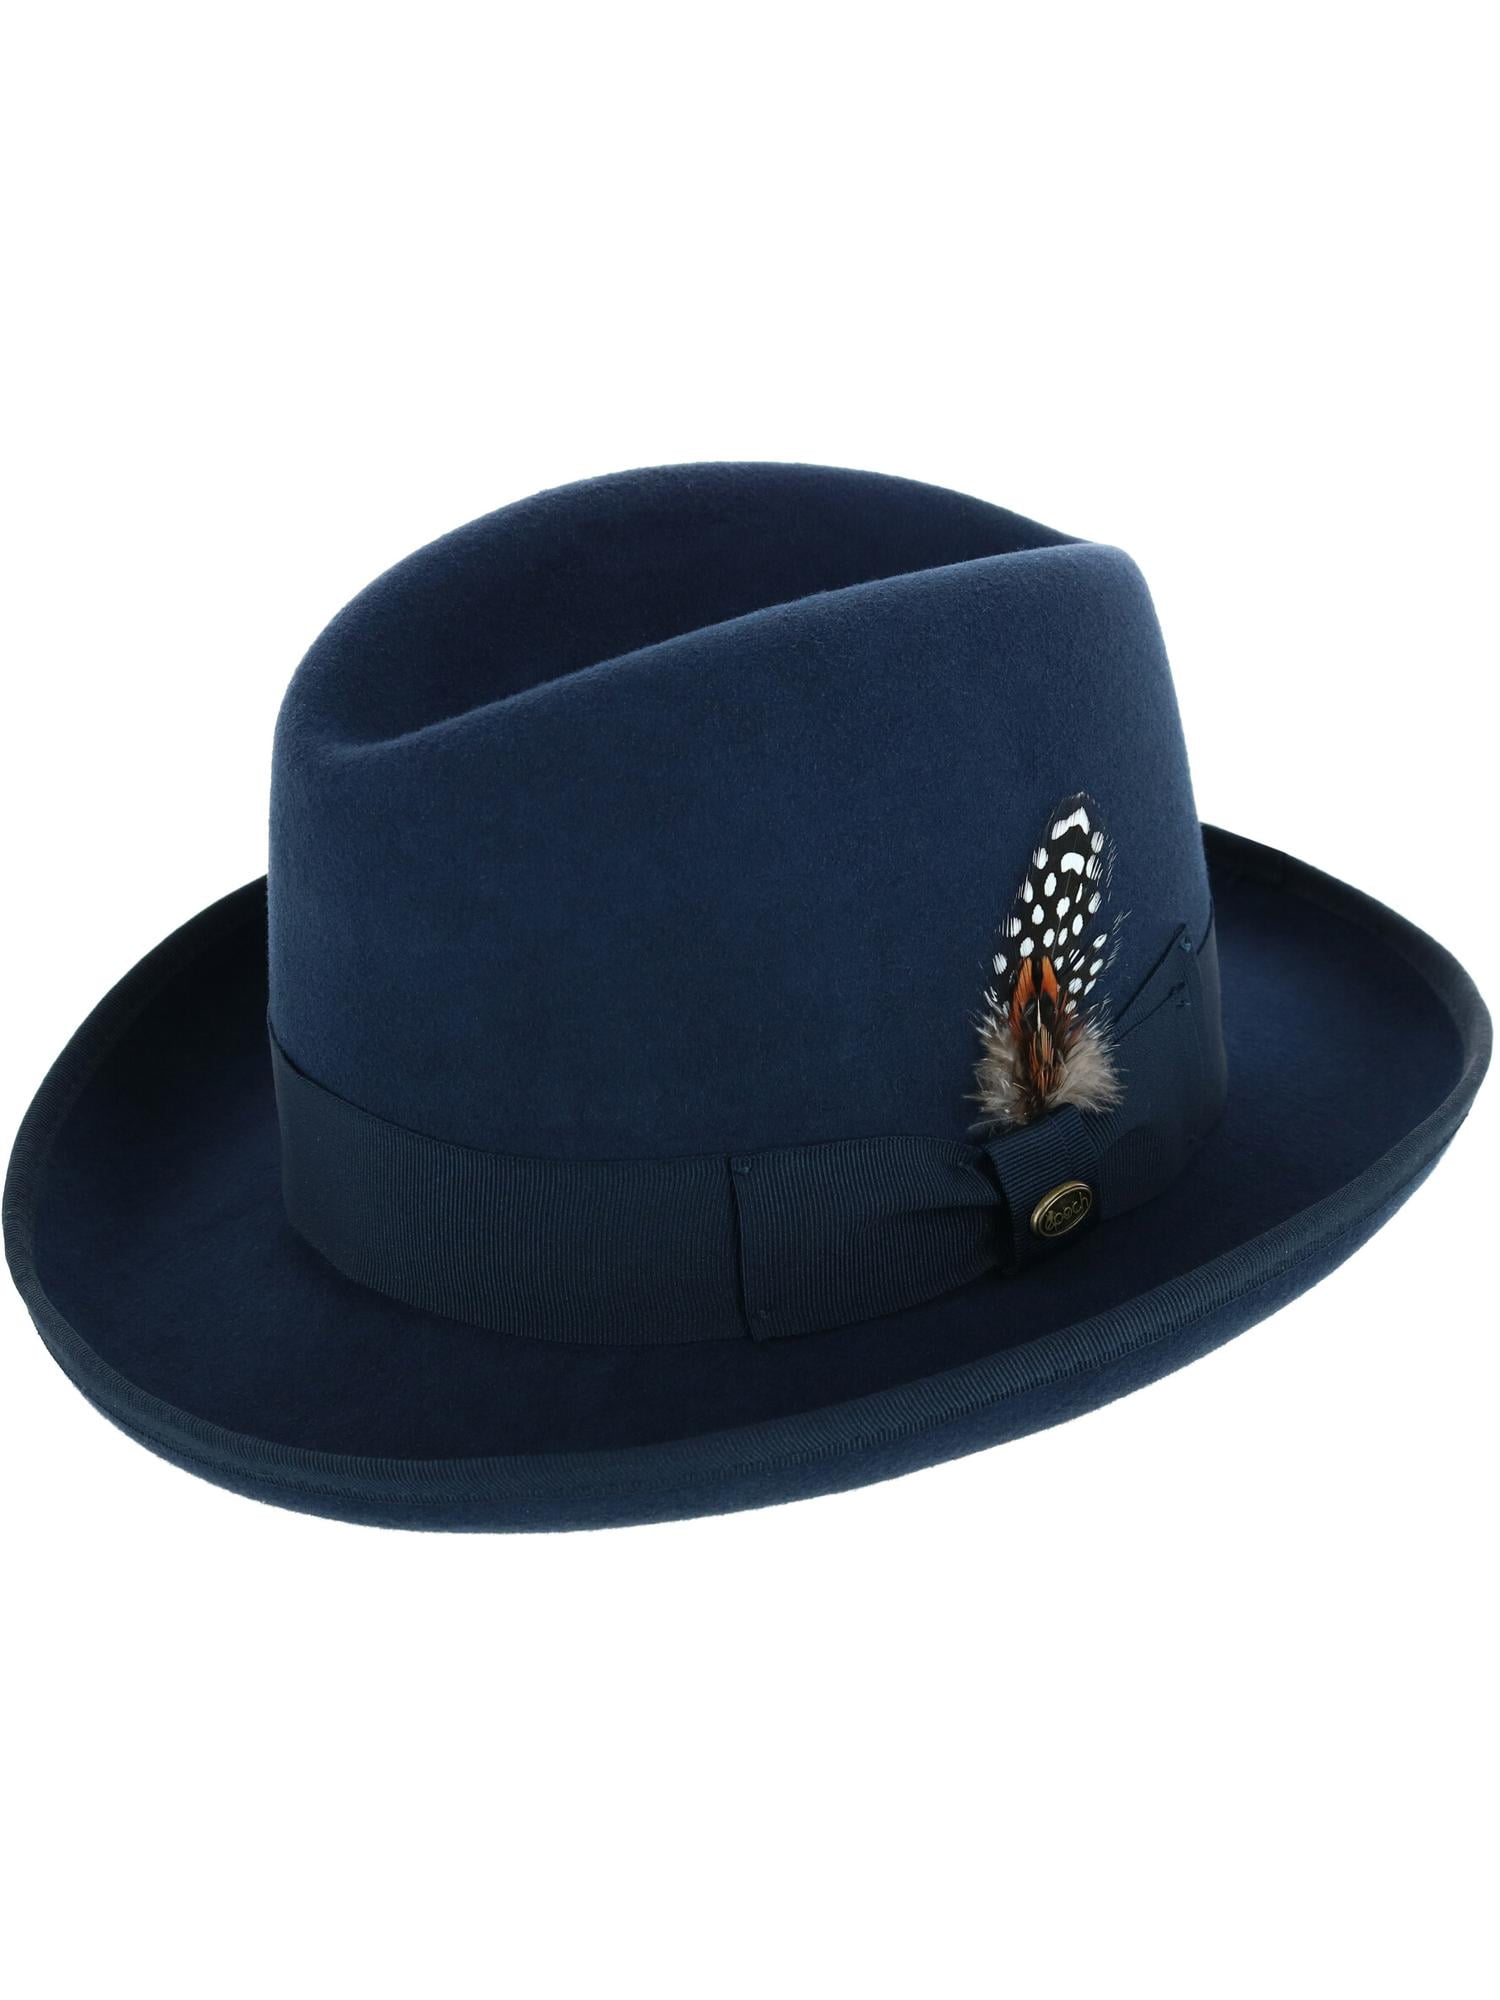 Pascua de Resurrección Distante Piquete Epoch Hats Company Wool Felt Homburg Godfather Hat with Feather (Men) -  Walmart.com